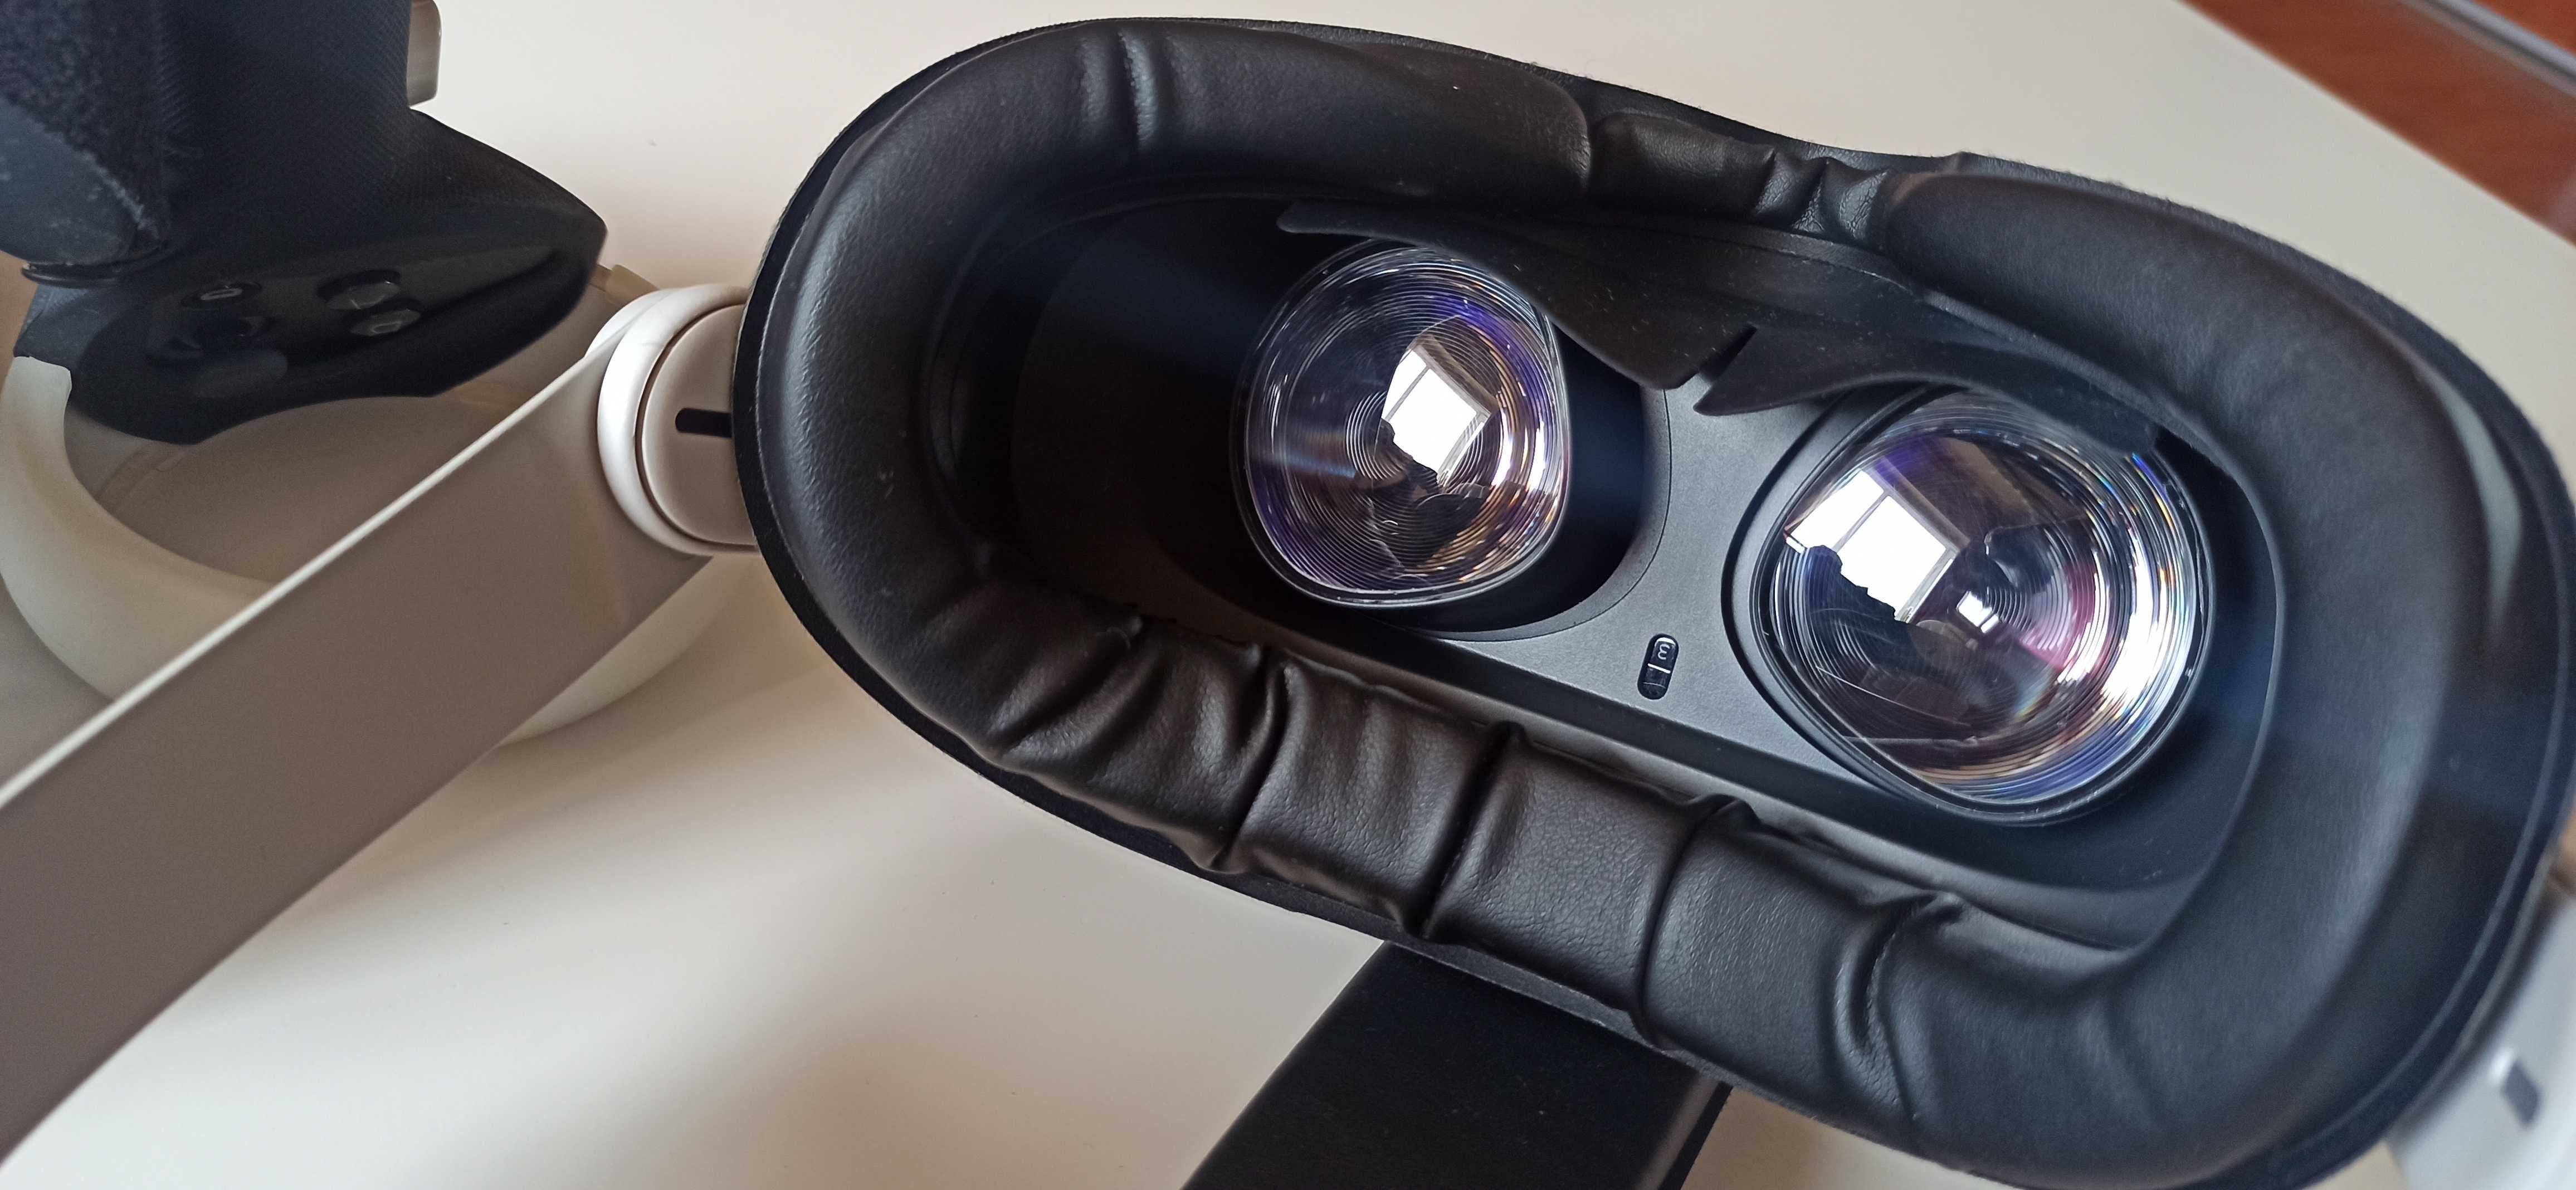 Oculus Quest 2 (256GB) in garantie + Accesorii Premium